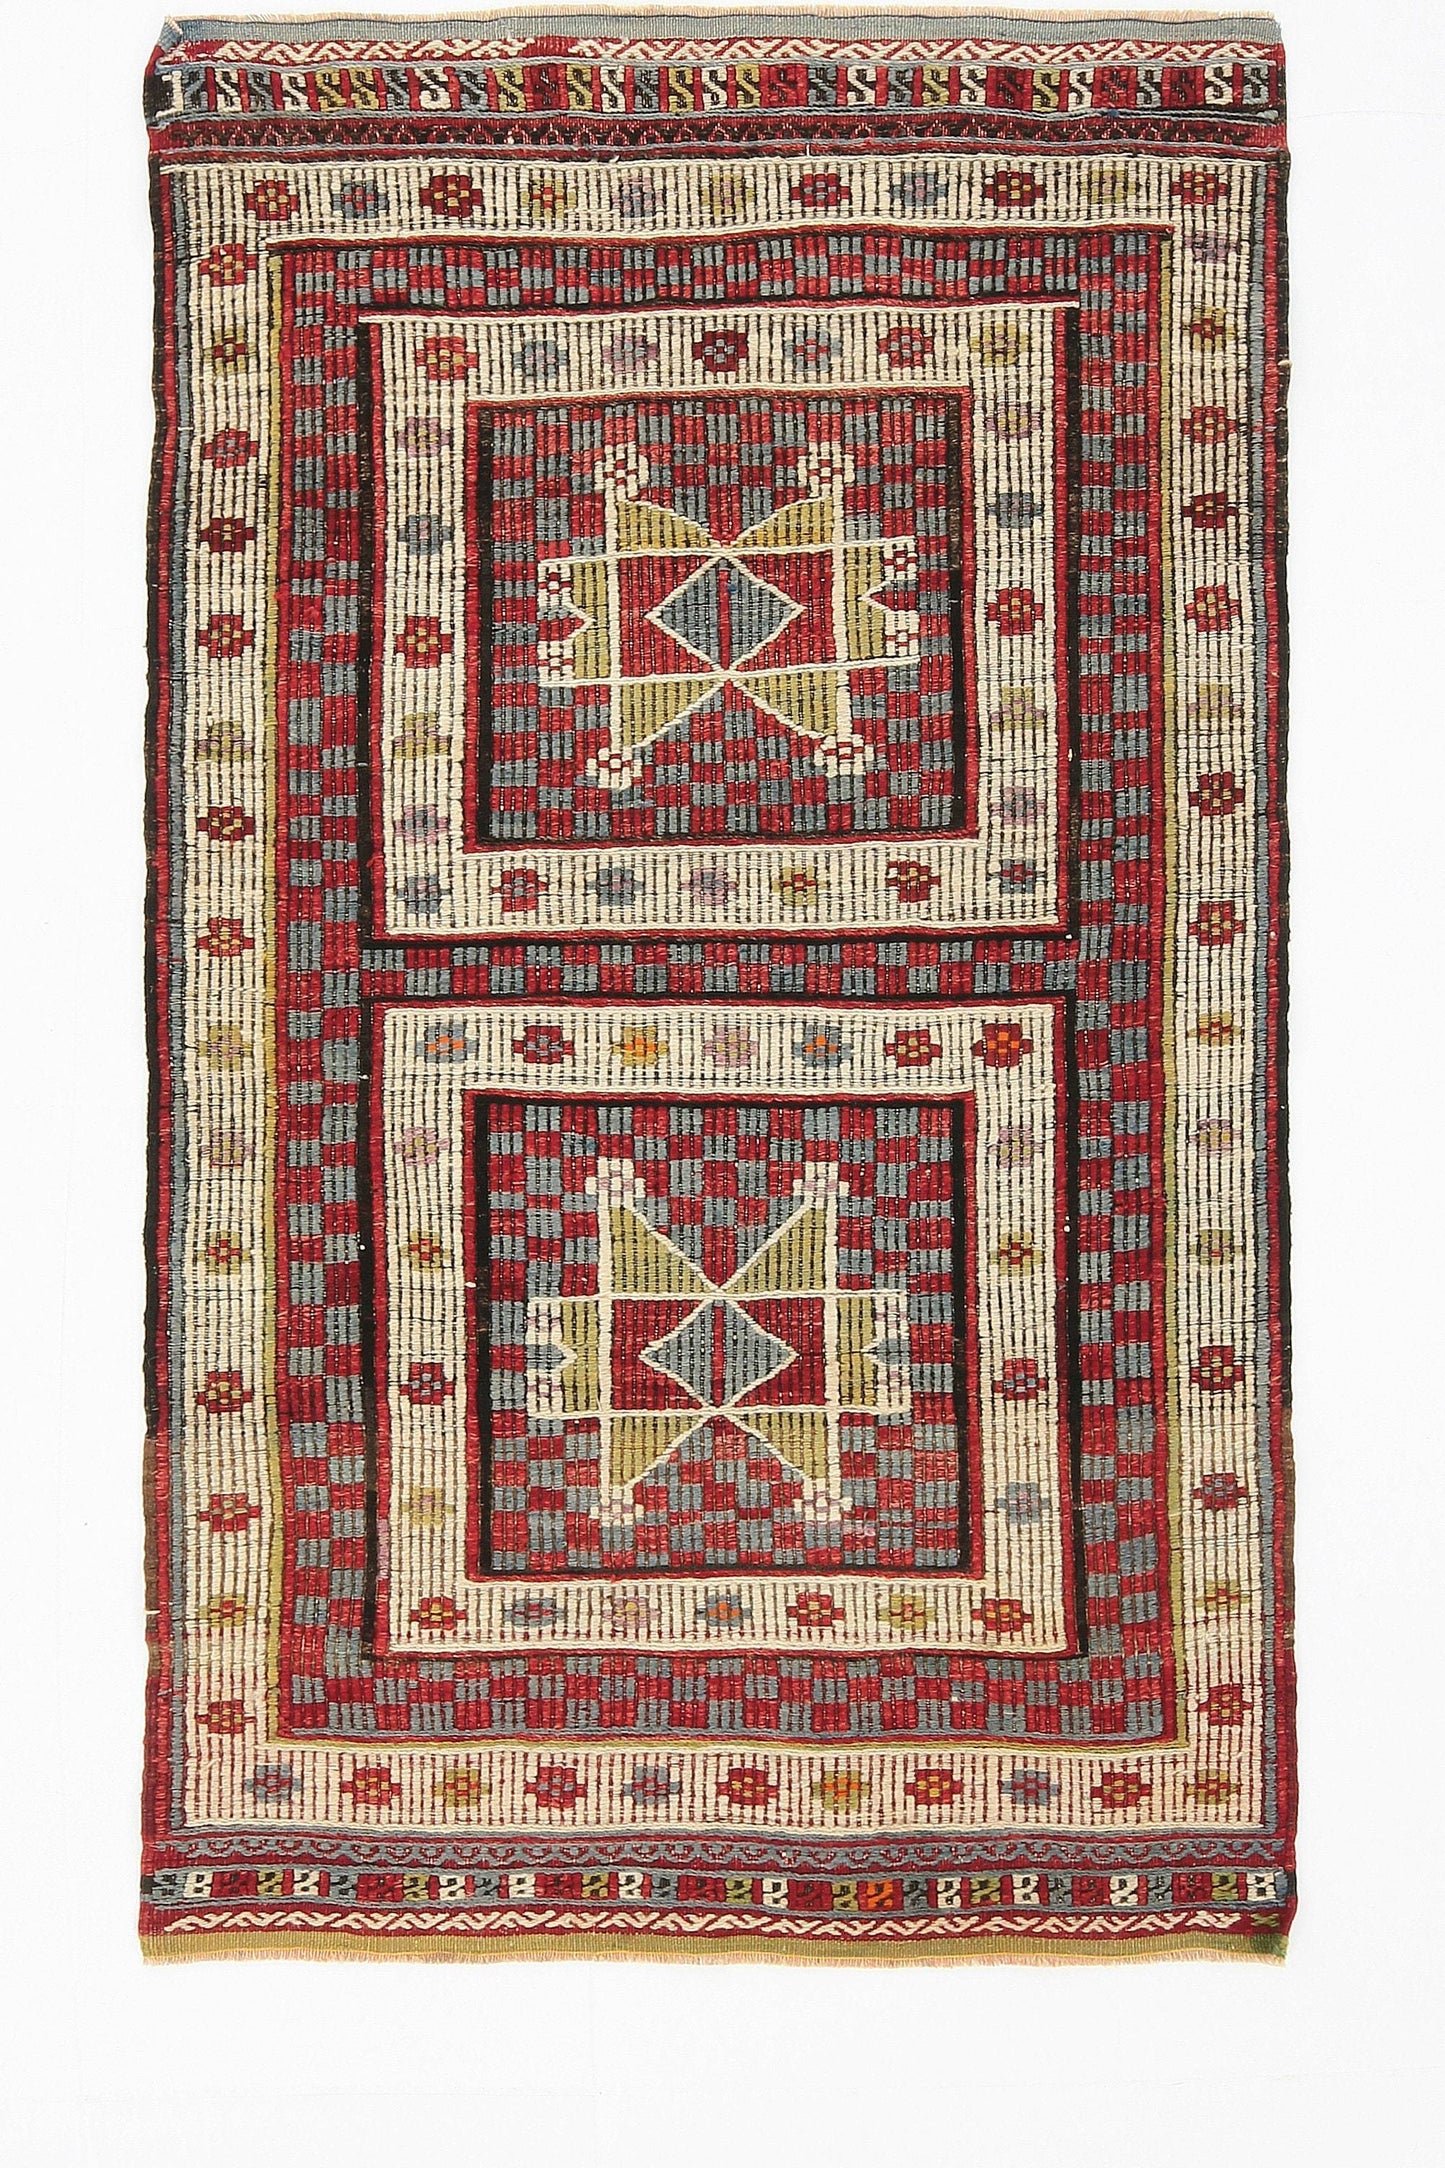 3' x 5' Multi Color Turkish Kilim Old Rug  |  RugReform